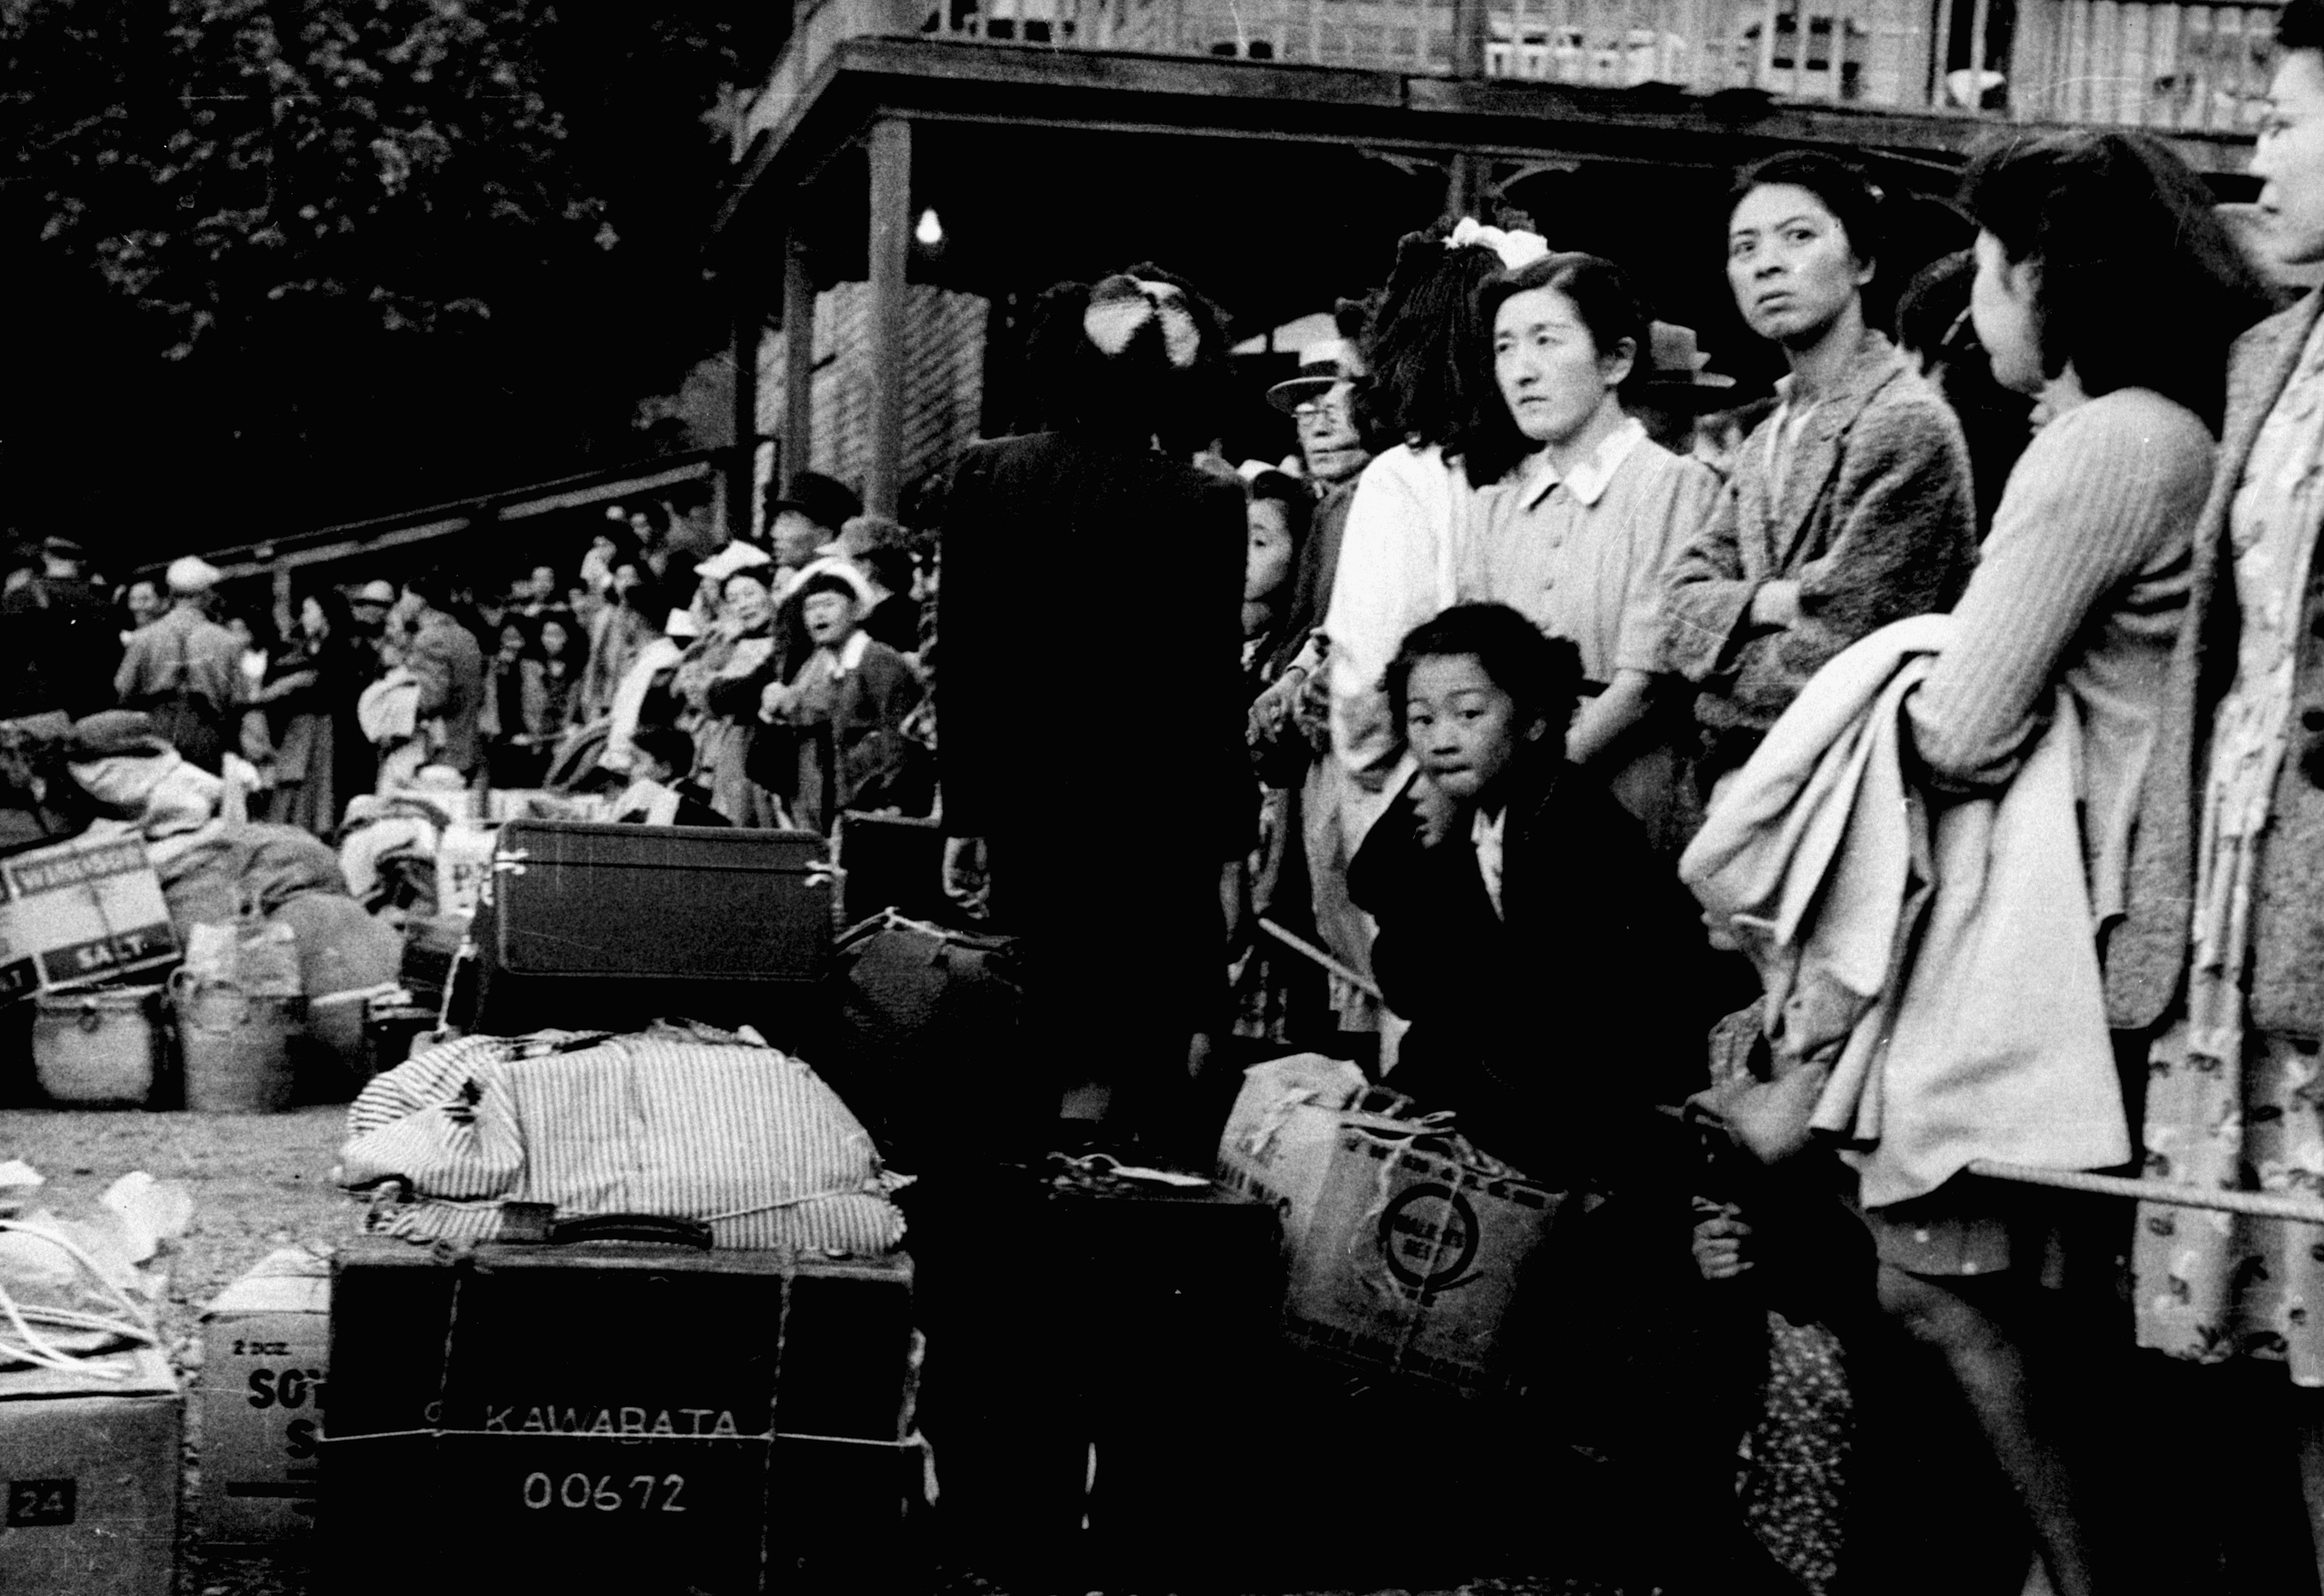 Photographie en noir et blanc de gens d’origine japonaise attendant un train.//Black-and-white photograph of Japanese Canadians waiting for a train.